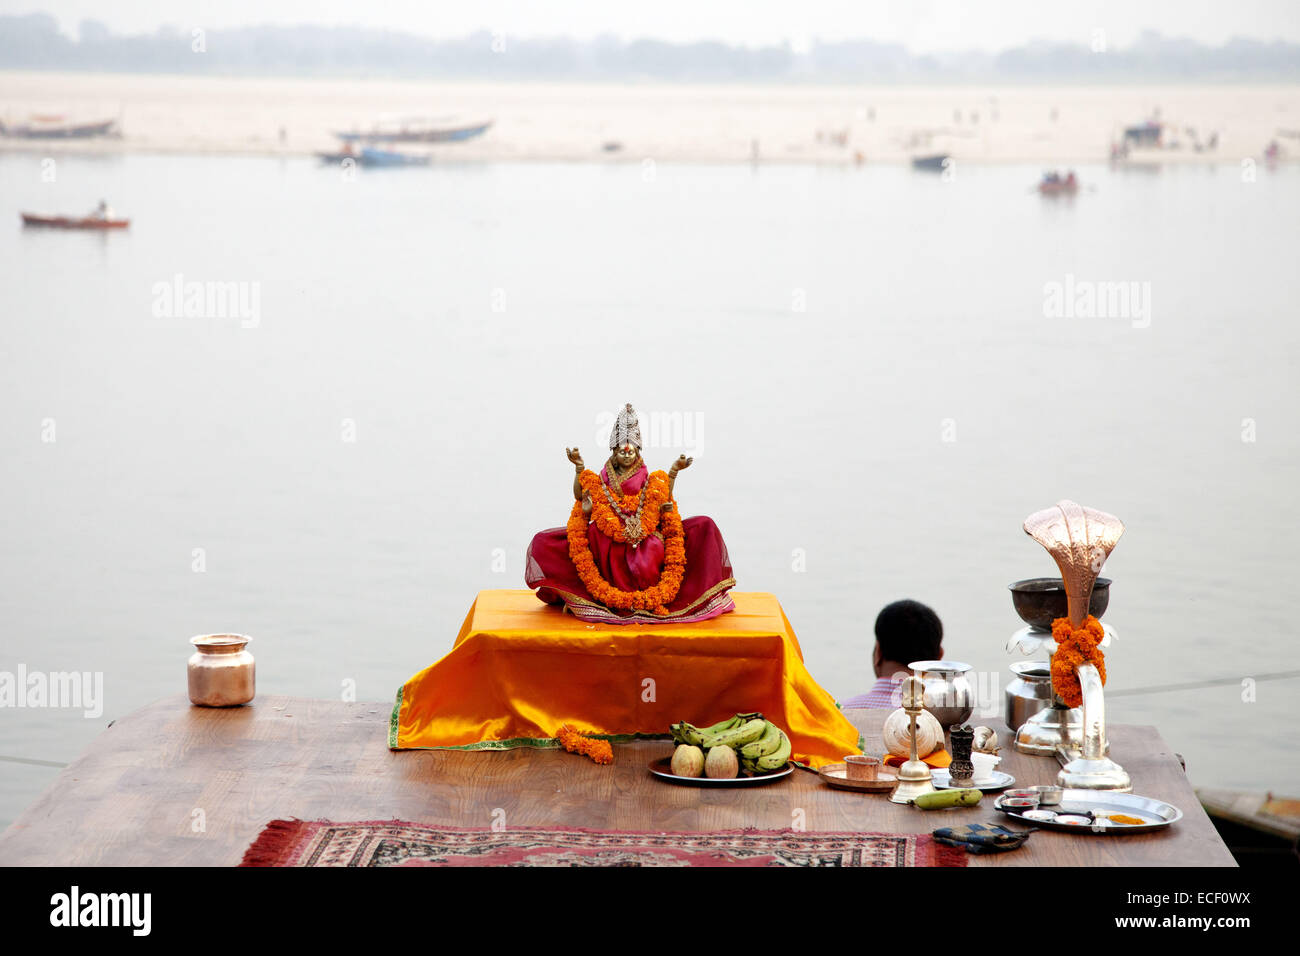 28 novembre 2014 - 28 novembre 2014 ''" Varanasi, en Inde, le fleuve Ganga ghat de la ville sainte de Varanasi. Selon la légende, Varanasi a été fondée par le Dieu Shiva. Les Pandavas, les héros de l'épopée Hindoue Mahabharata sont également dit d'avoir visité la ville à la recherche de Shiva à expier ses péchés de fratricide et BrÄhmanahatya qu'ils avaient commis durant la guerre de Kurukshetra climatiques. Elle est considérée comme l'une des sept villes saintes qui peuvent fournir la Moksha. © K M Asad/ZUMA/ZUMAPRESS.com/Alamy fil Live News Banque D'Images